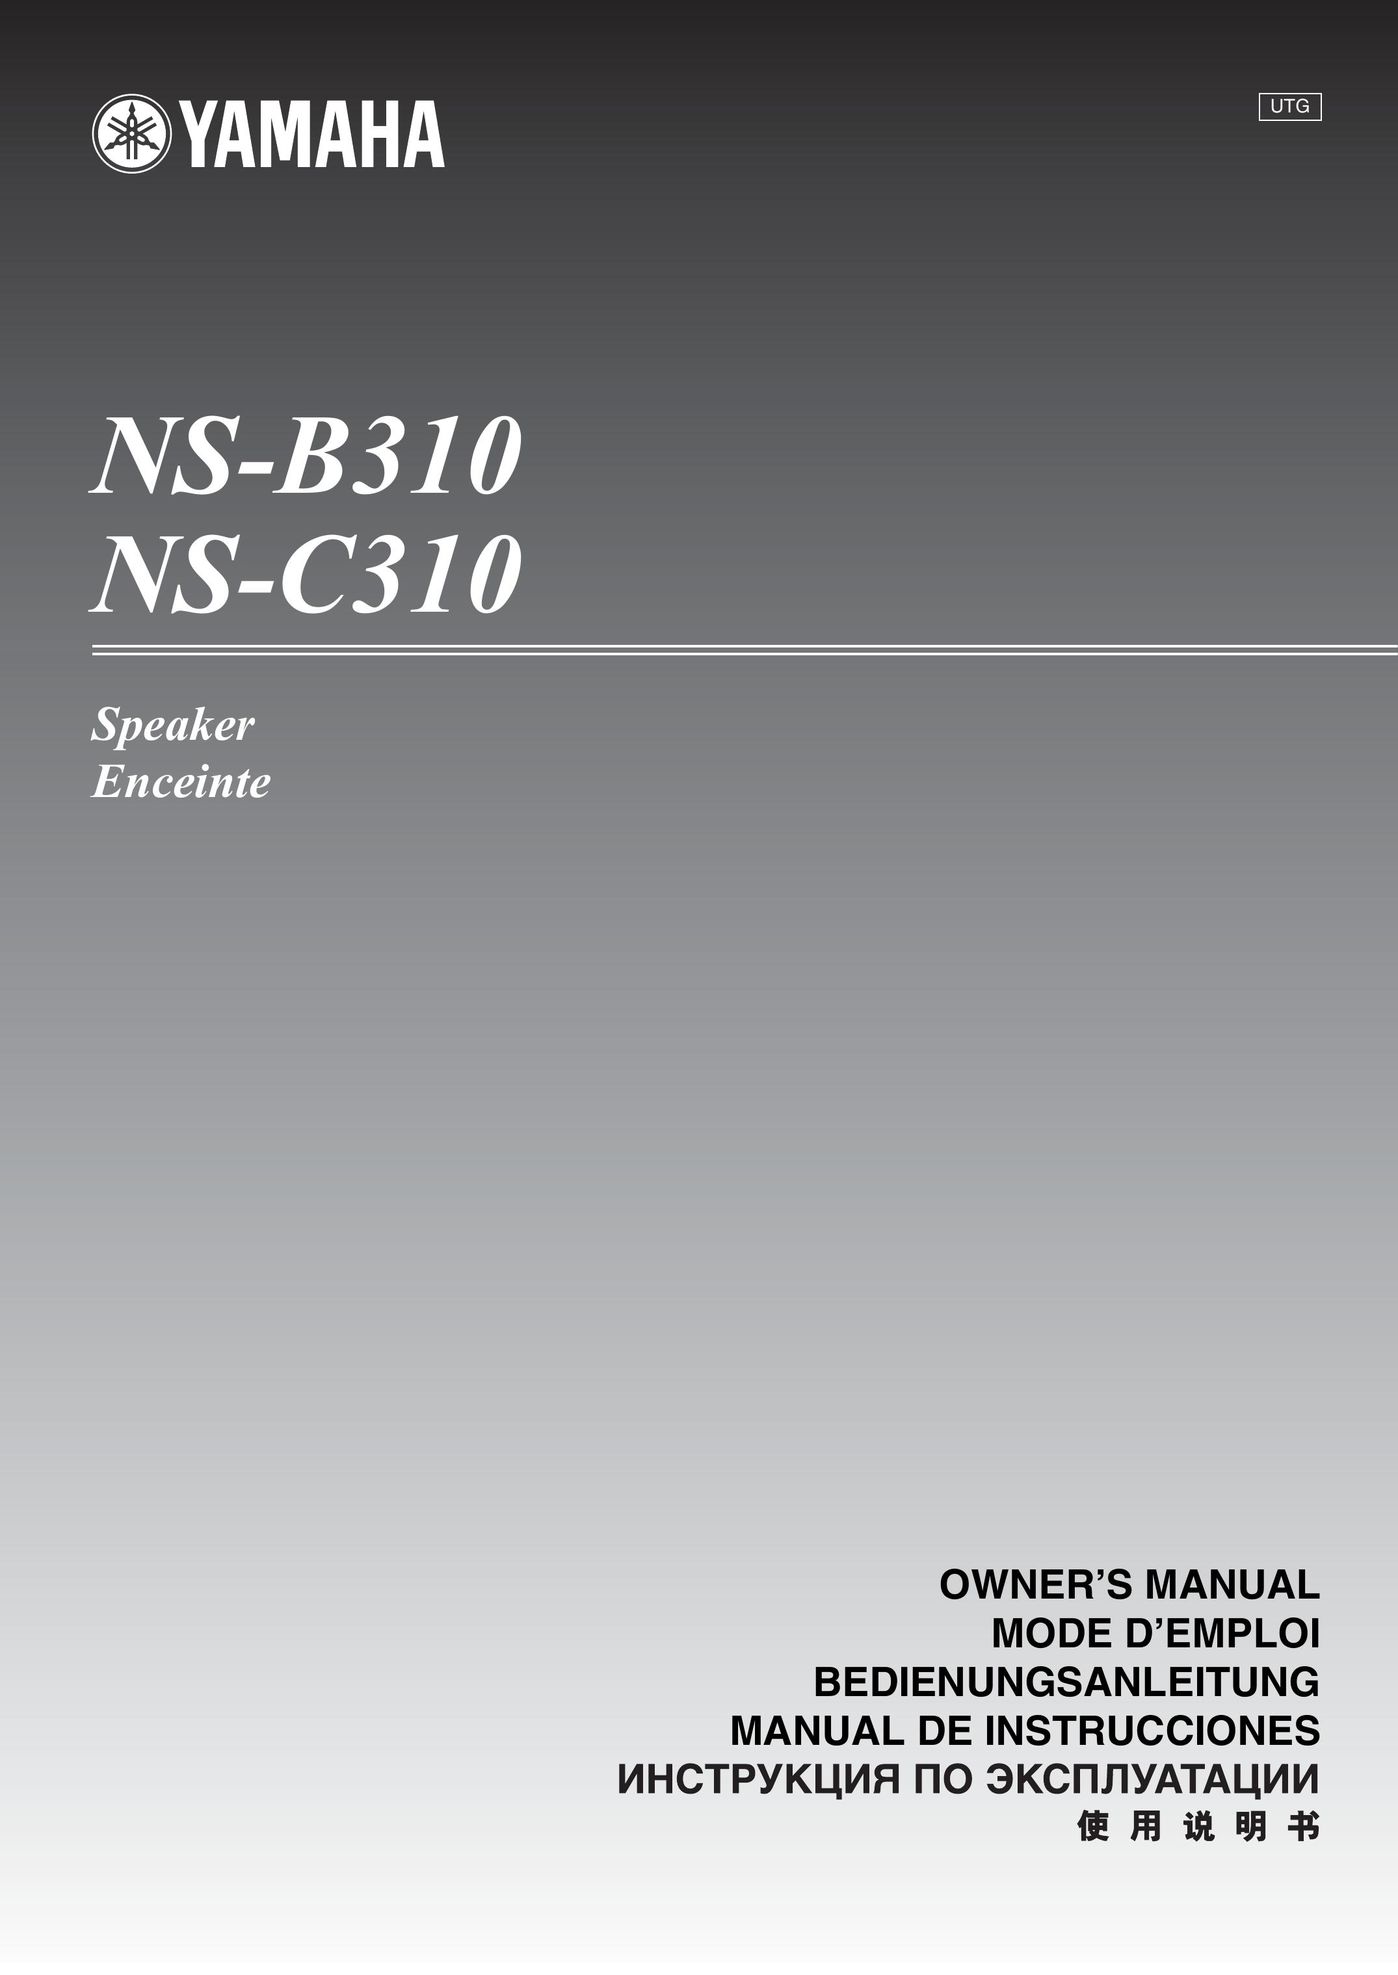 Yamaha NS-B310 Car Speaker User Manual